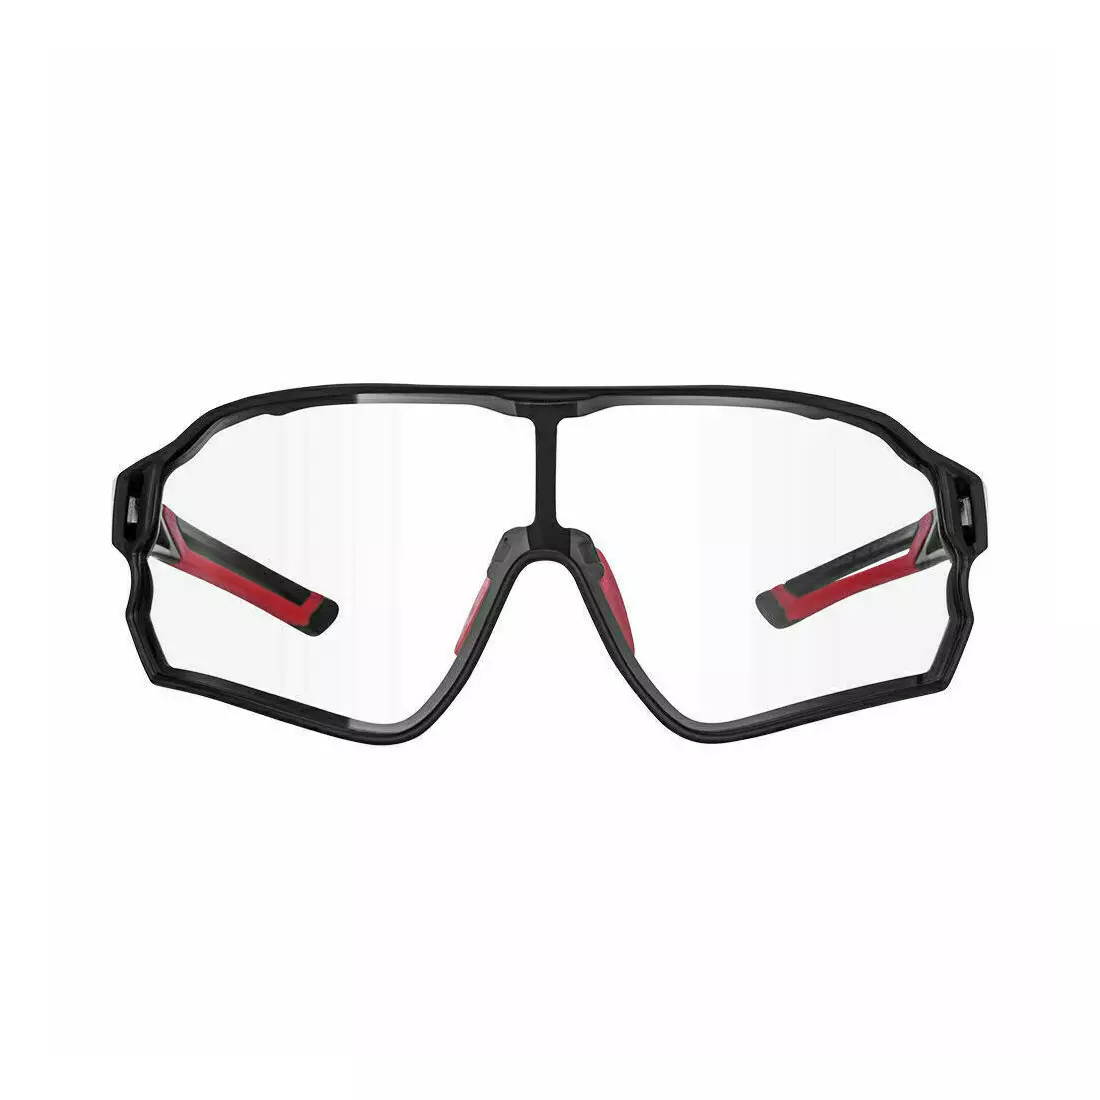 Rockbros 10135 Arduus cyklistické / športové okuliare s fotochromatickou úpravou čierna